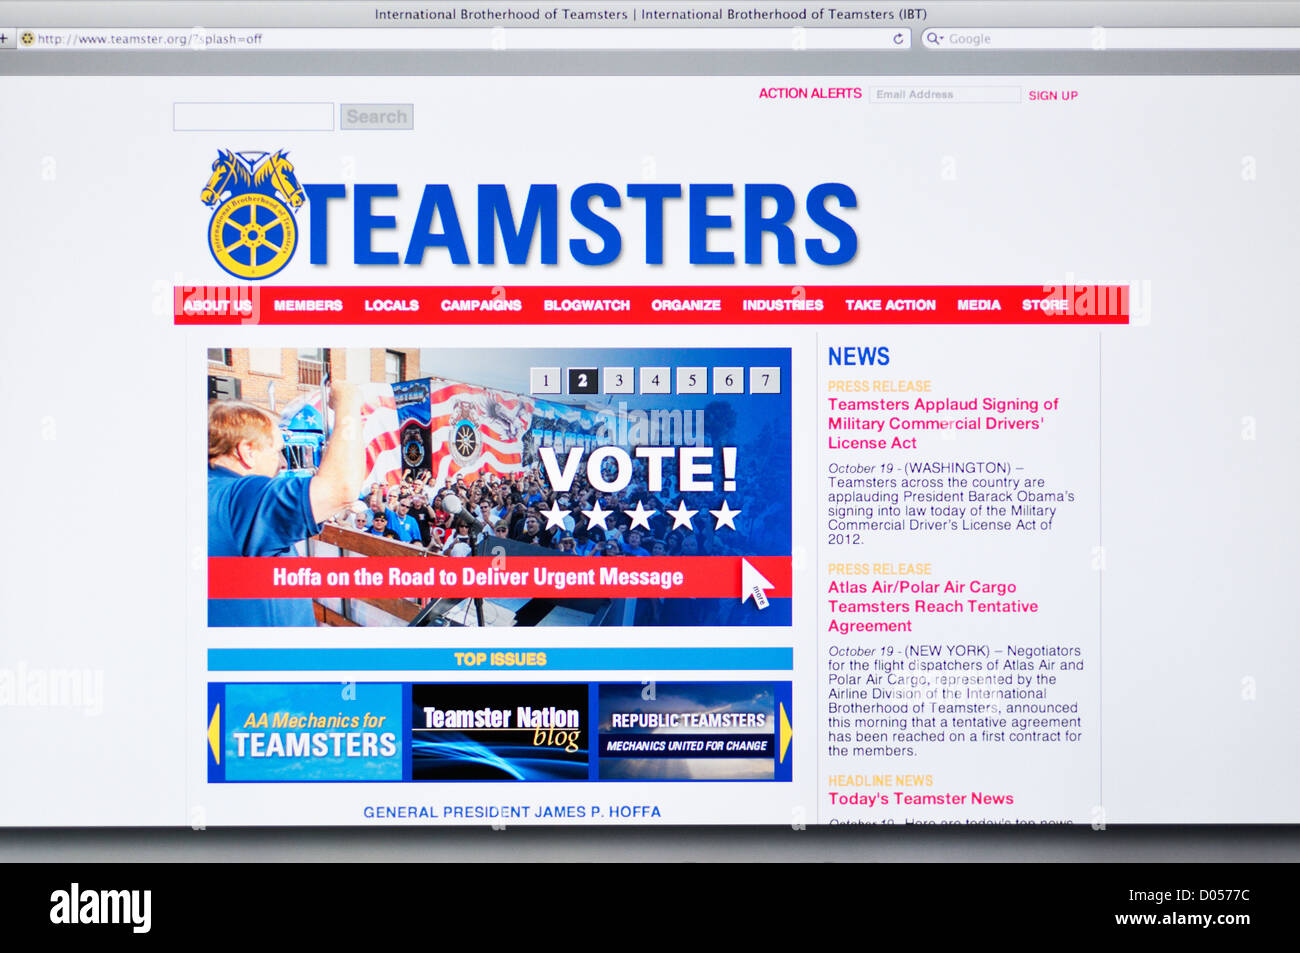 La fratellanza internazionale dei Teamsters lavoratori sito web di unione Foto Stock